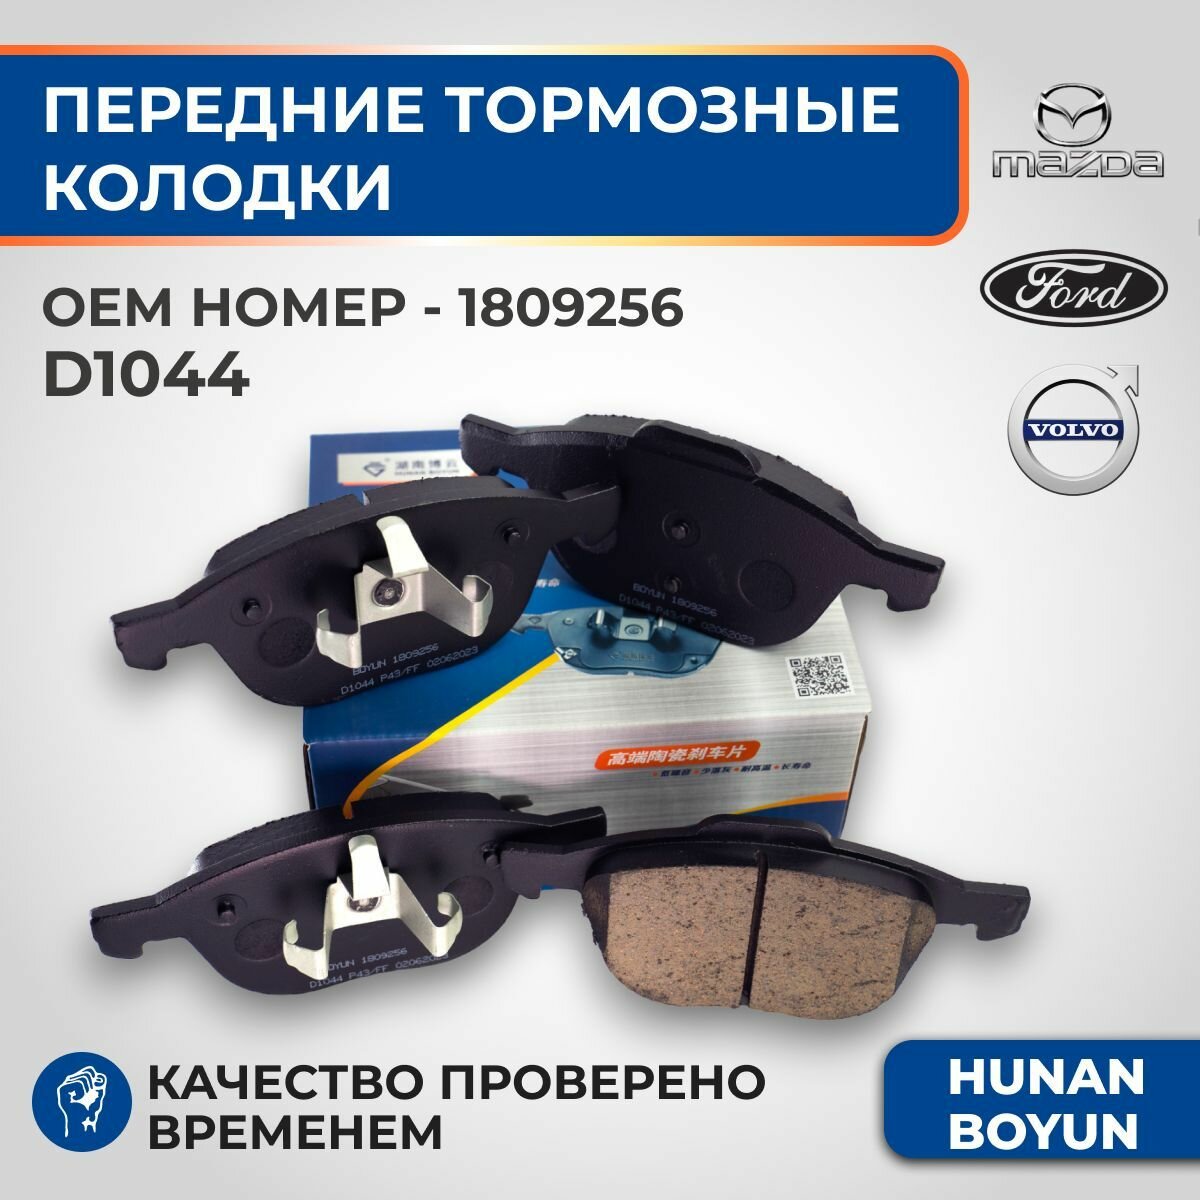 Передние тормозные колодки для Ford Focus, Kuga, C-Max, Mazda 3, Volvo C30, S40 - 1809256